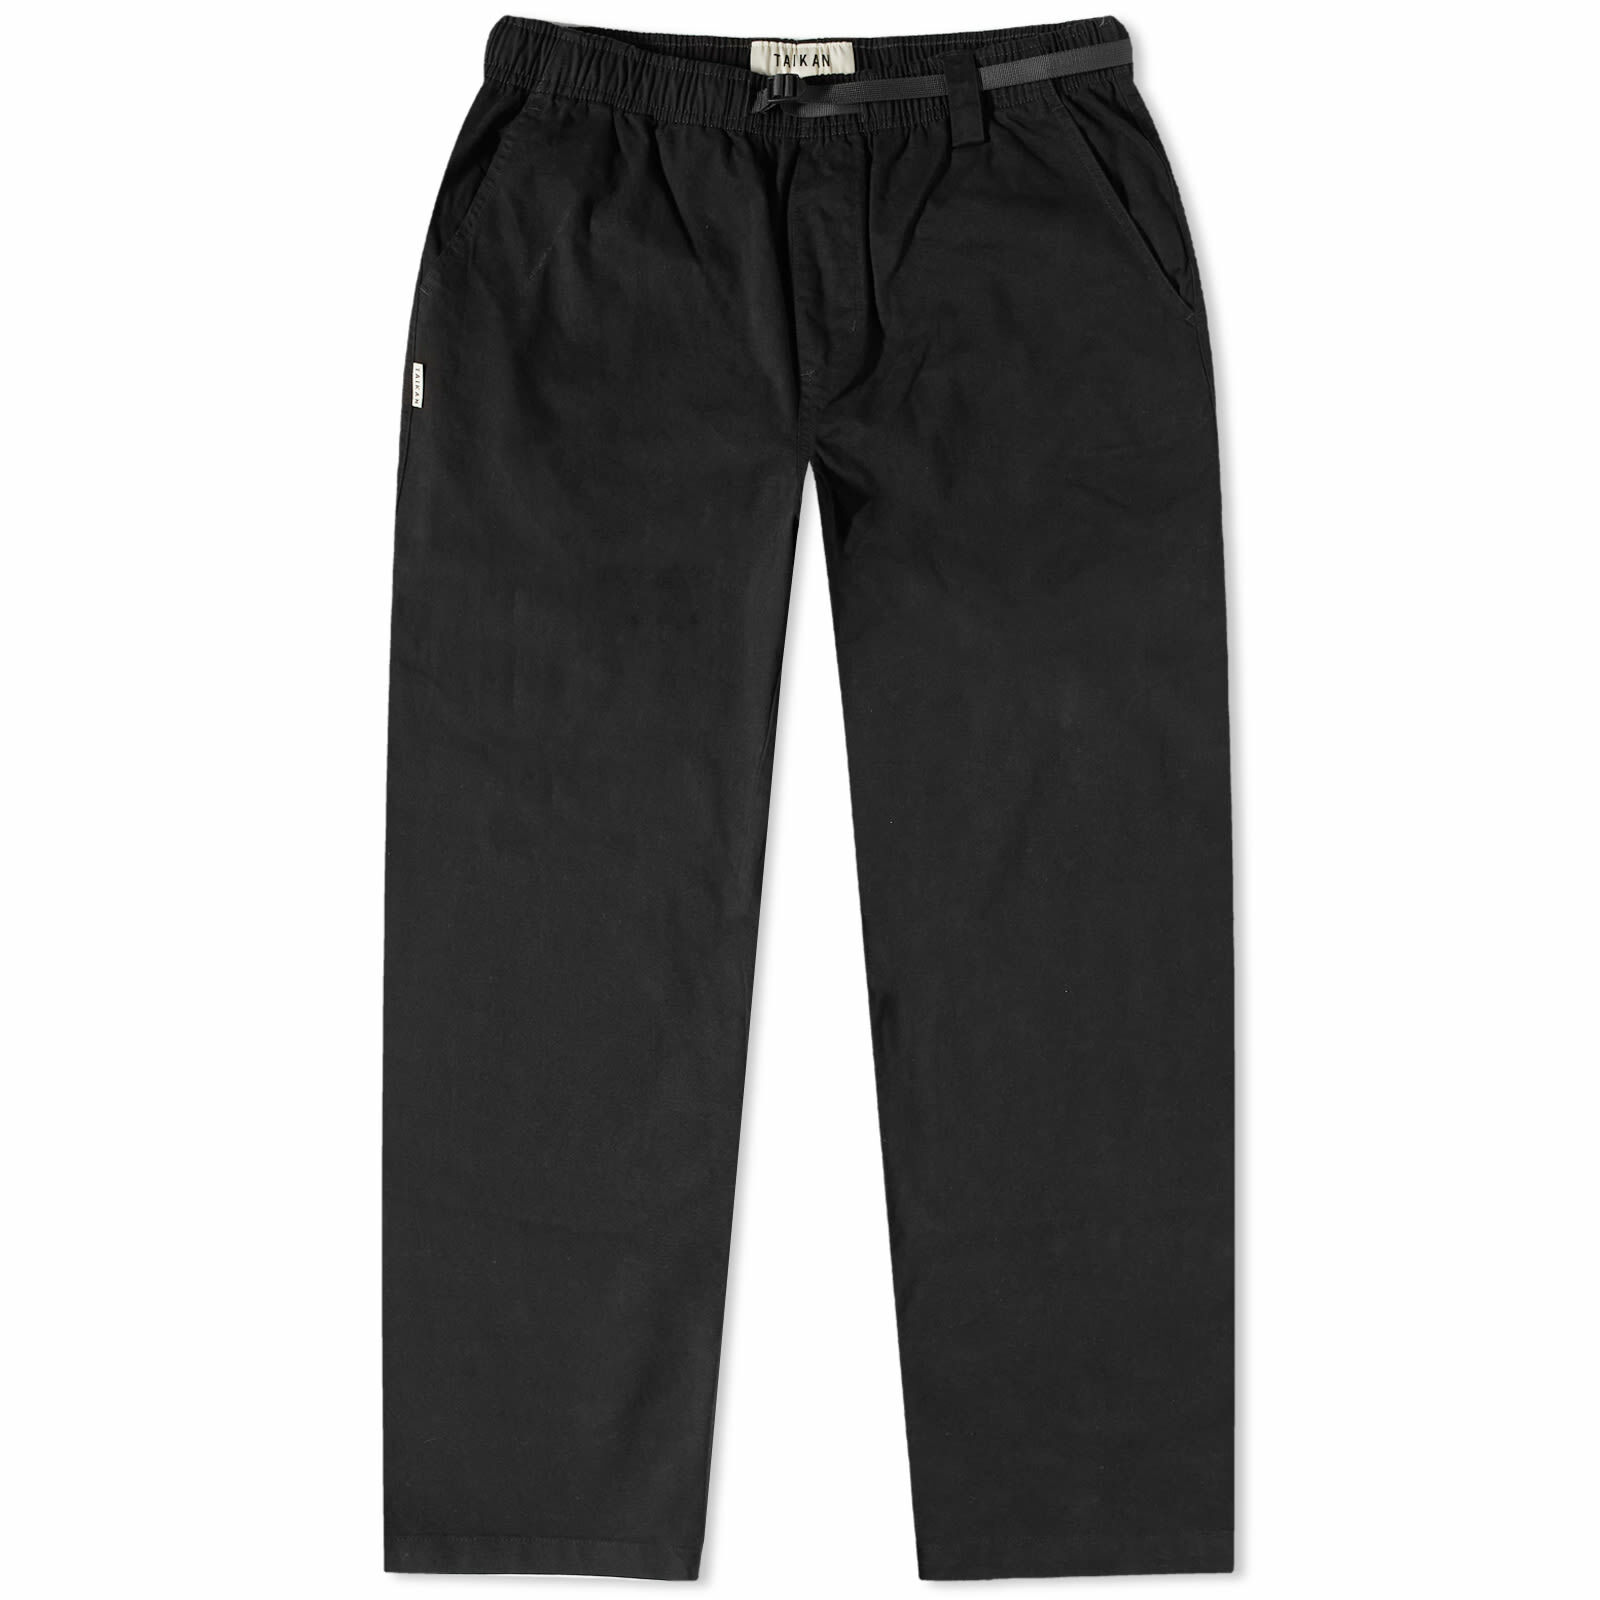 Taikan Men's Chiller Pants in Black Twill Taikan